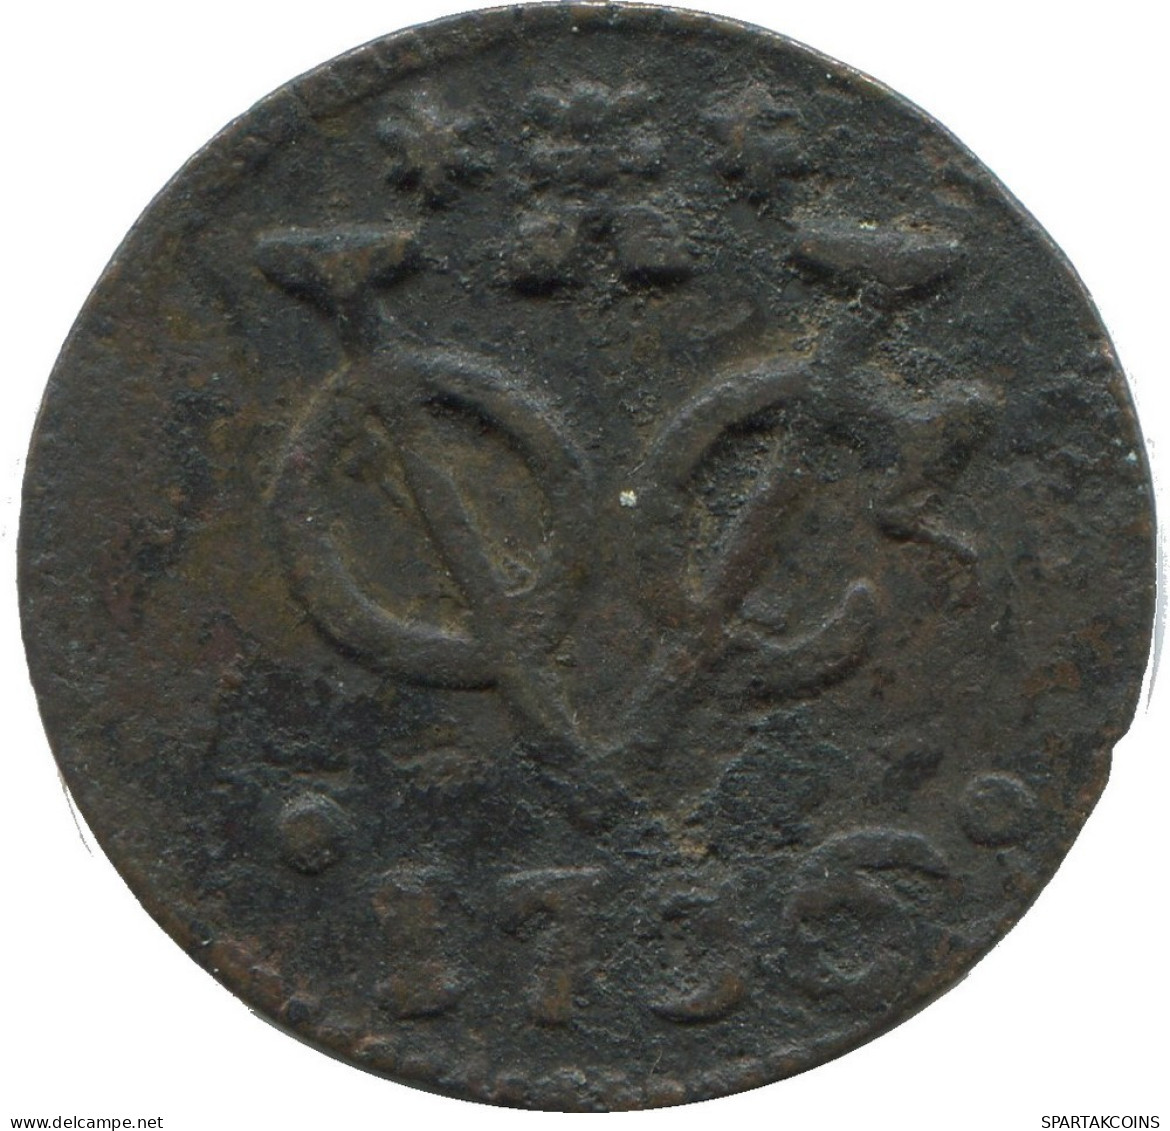 1736 ZEELAND VOC DUIT NETHERLANDS INDIES NEW YORK COLONIAL PENNY #VOC1140.8.U.A - Dutch East Indies